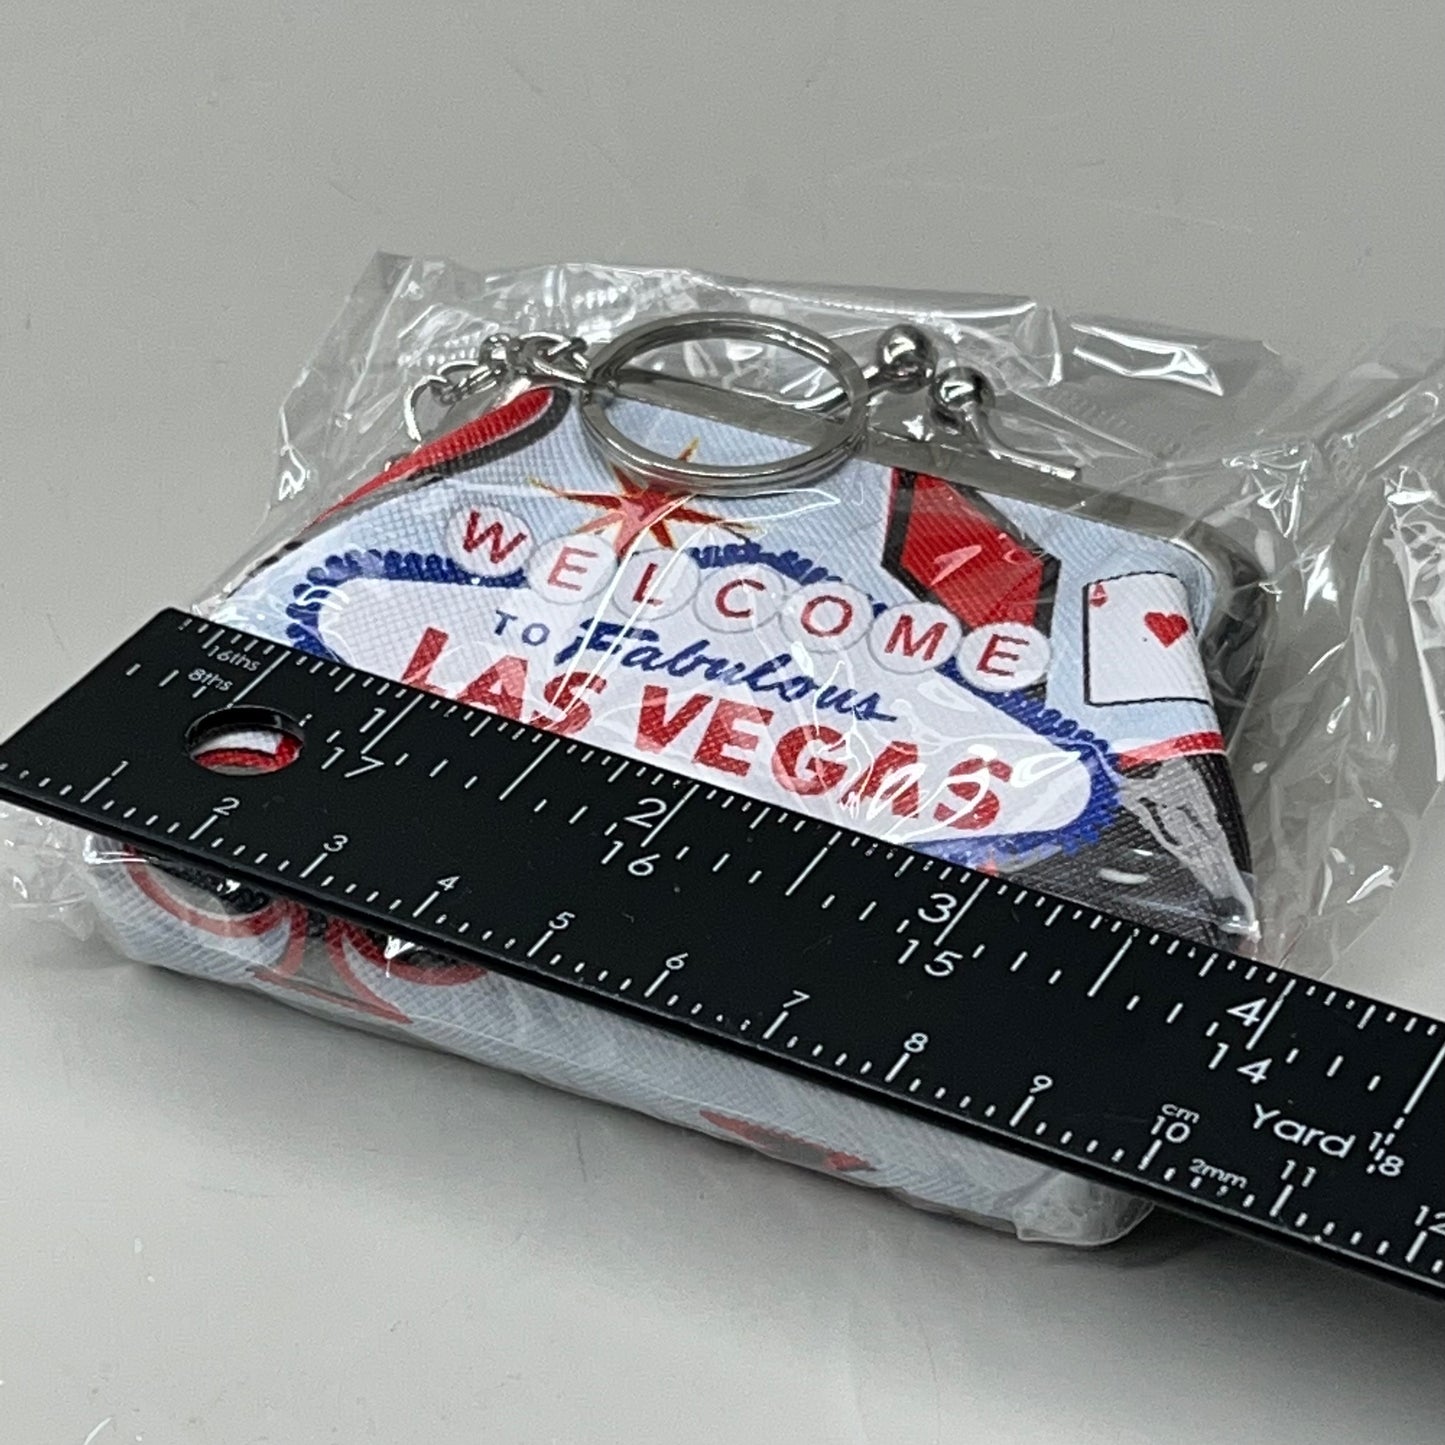 LAS VEGAS 3-PACK! Welcome to Fabulous Las Vegas Coin Purse Souvenirs 4" x 4" Cards